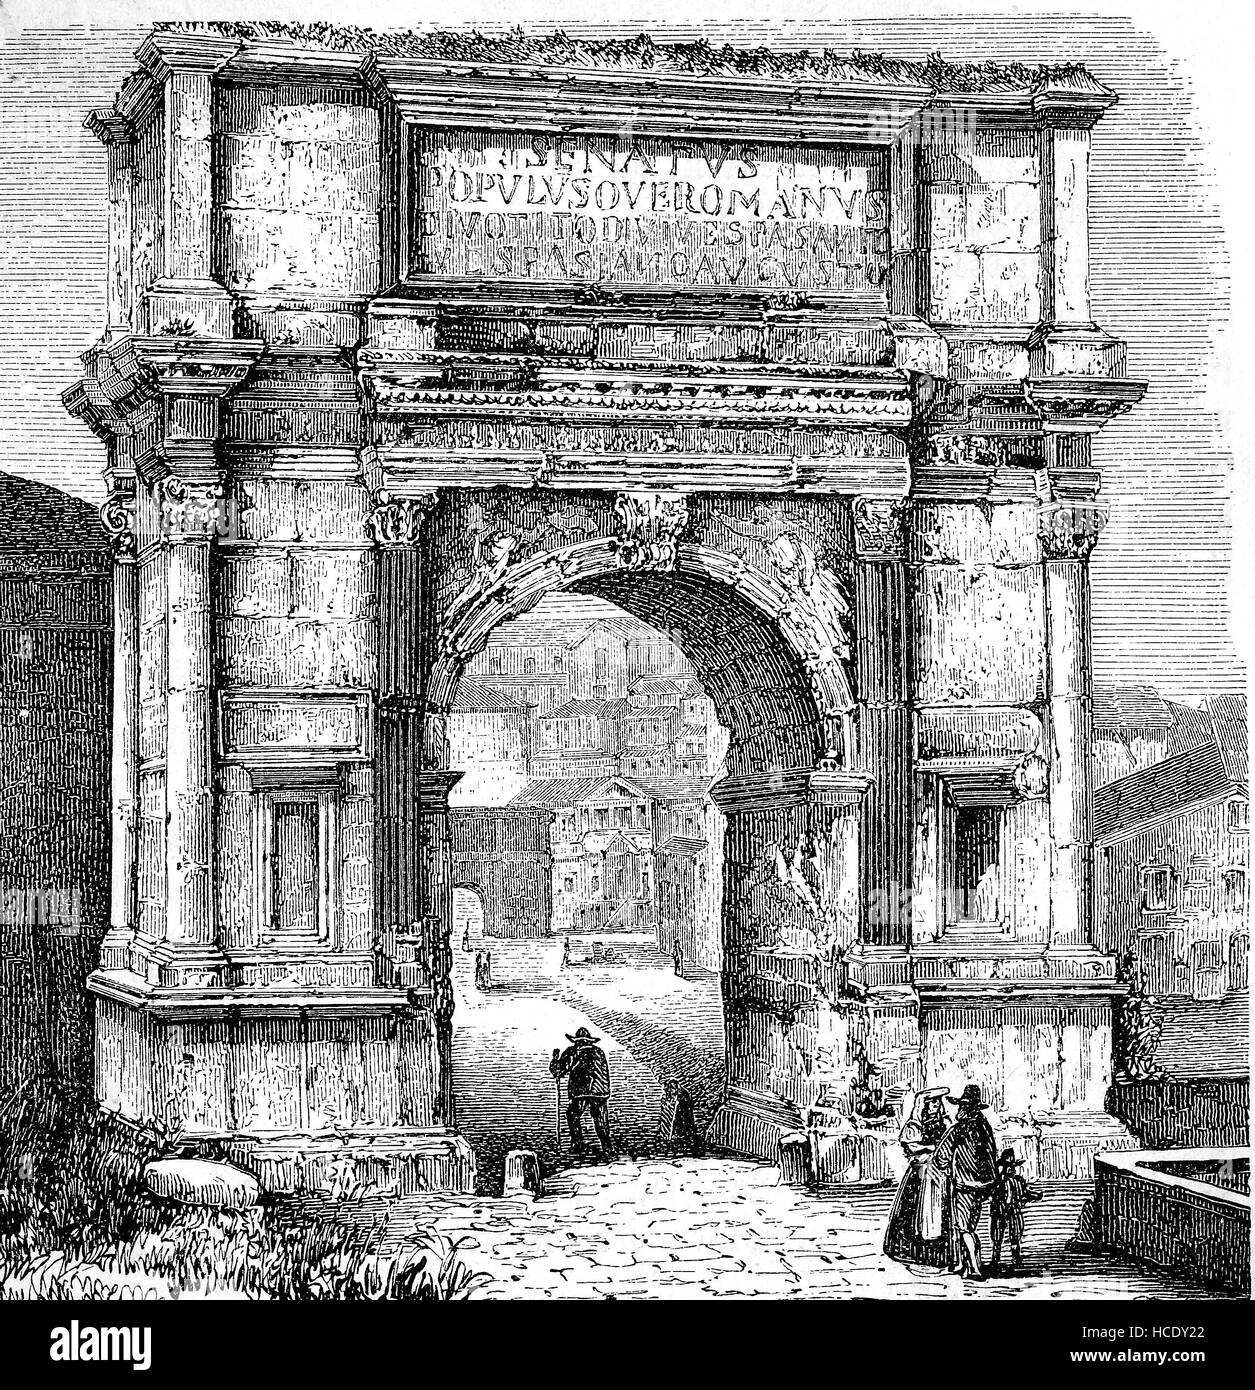 L'Arc de Titus, Arco di Tito, un 1ème siècle A.D. honorific arch, situé sur la Via Sacra, Rome, Italie, l'histoire de la Rome antique, Empire romain Banque D'Images